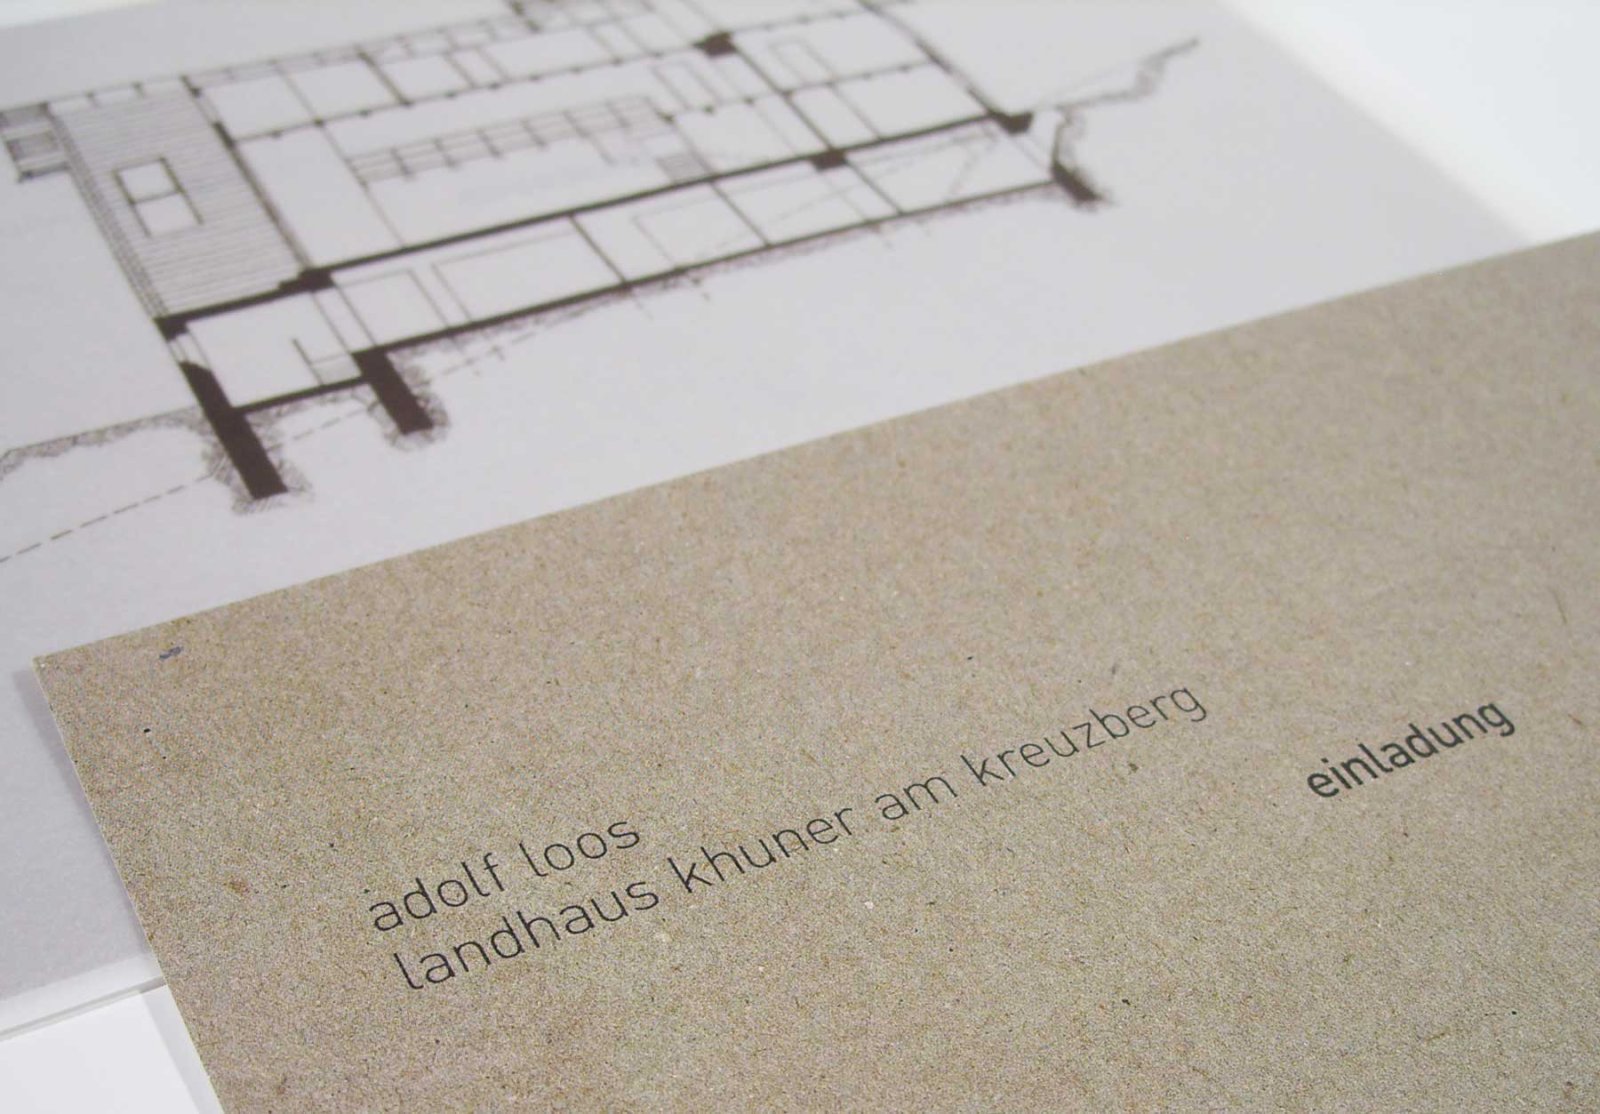 Einladung zur Buchpräsentation Adolf Loos, Landhaus Khuner am Kreuzberg Detailansicht